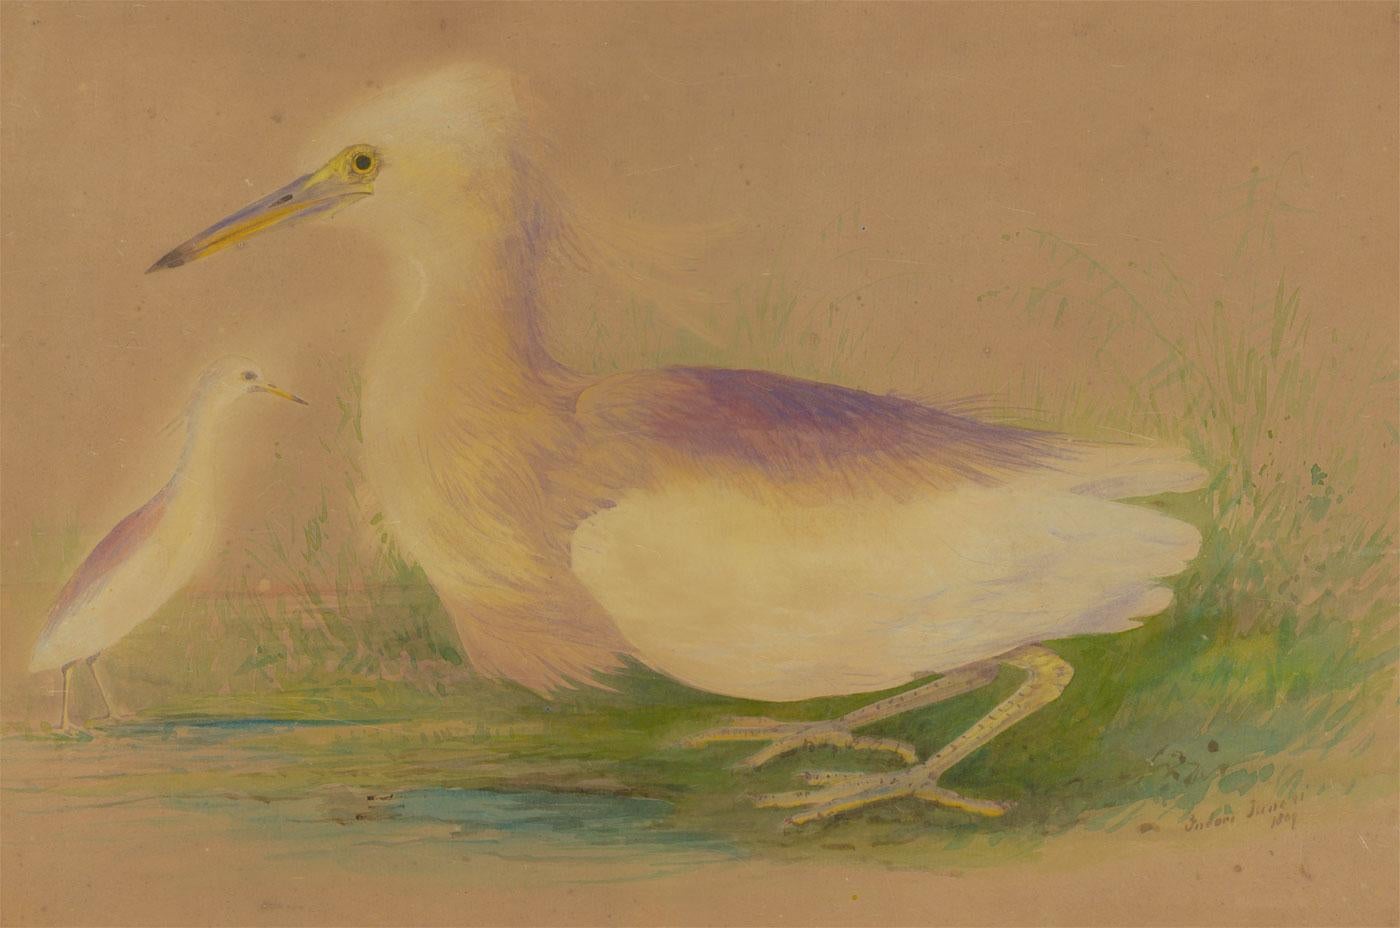 Gerahmtes Aquarell von 1809 - Eine Studie von zwei schneeligen Egrets – Art von Unknown